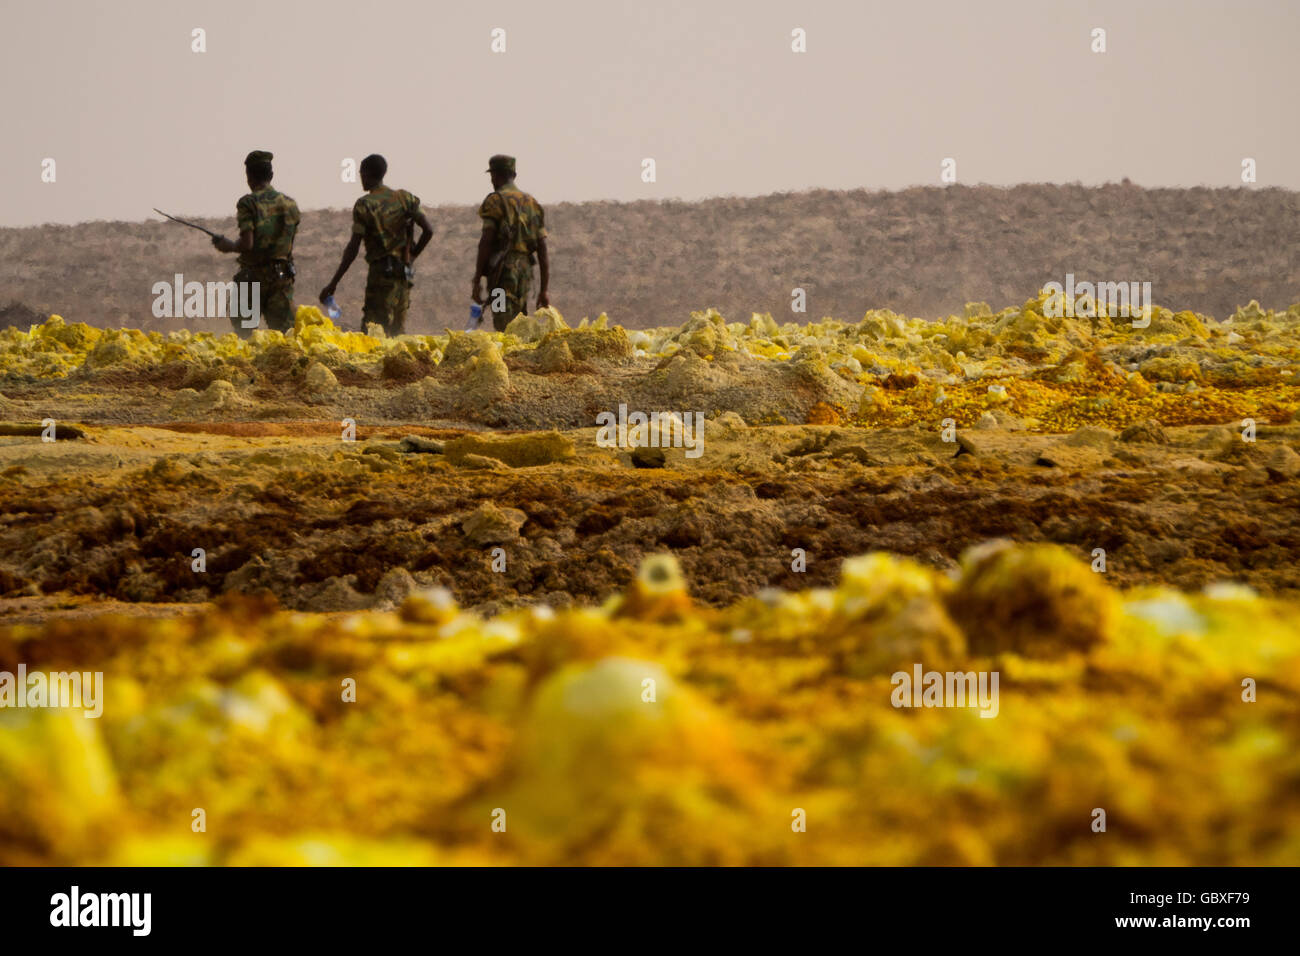 soldiers patrol Dallol, a popular tourist attraction in the Danakil Depression in Ethiopia, near the Eritrean border Stock Photo